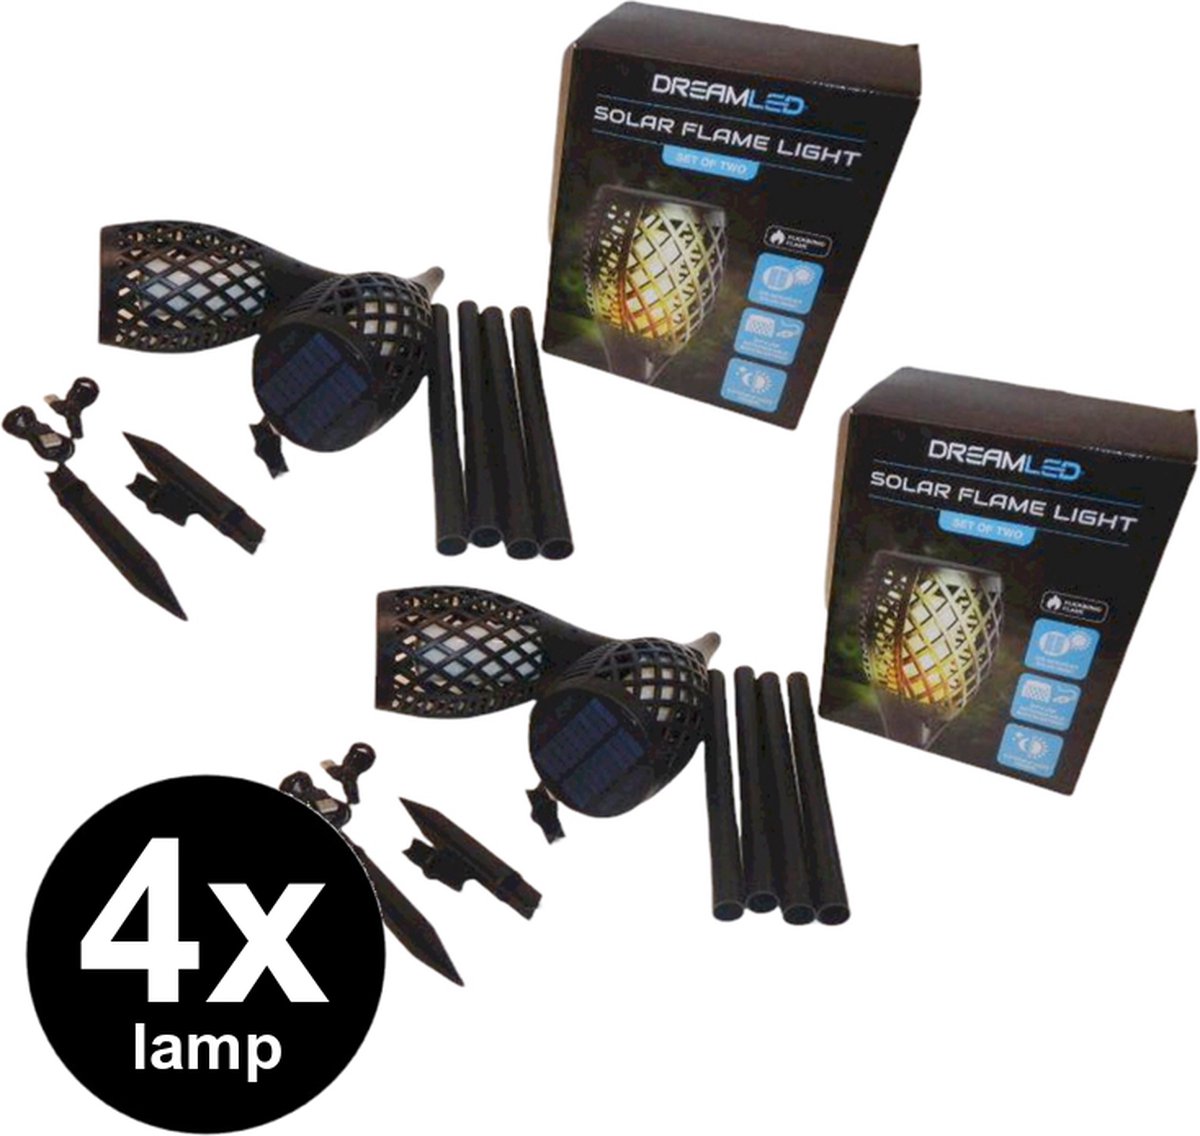 Dreamled Solar Flame LED Light fakkel tuinverlichting - set van 4 stuks |  bol